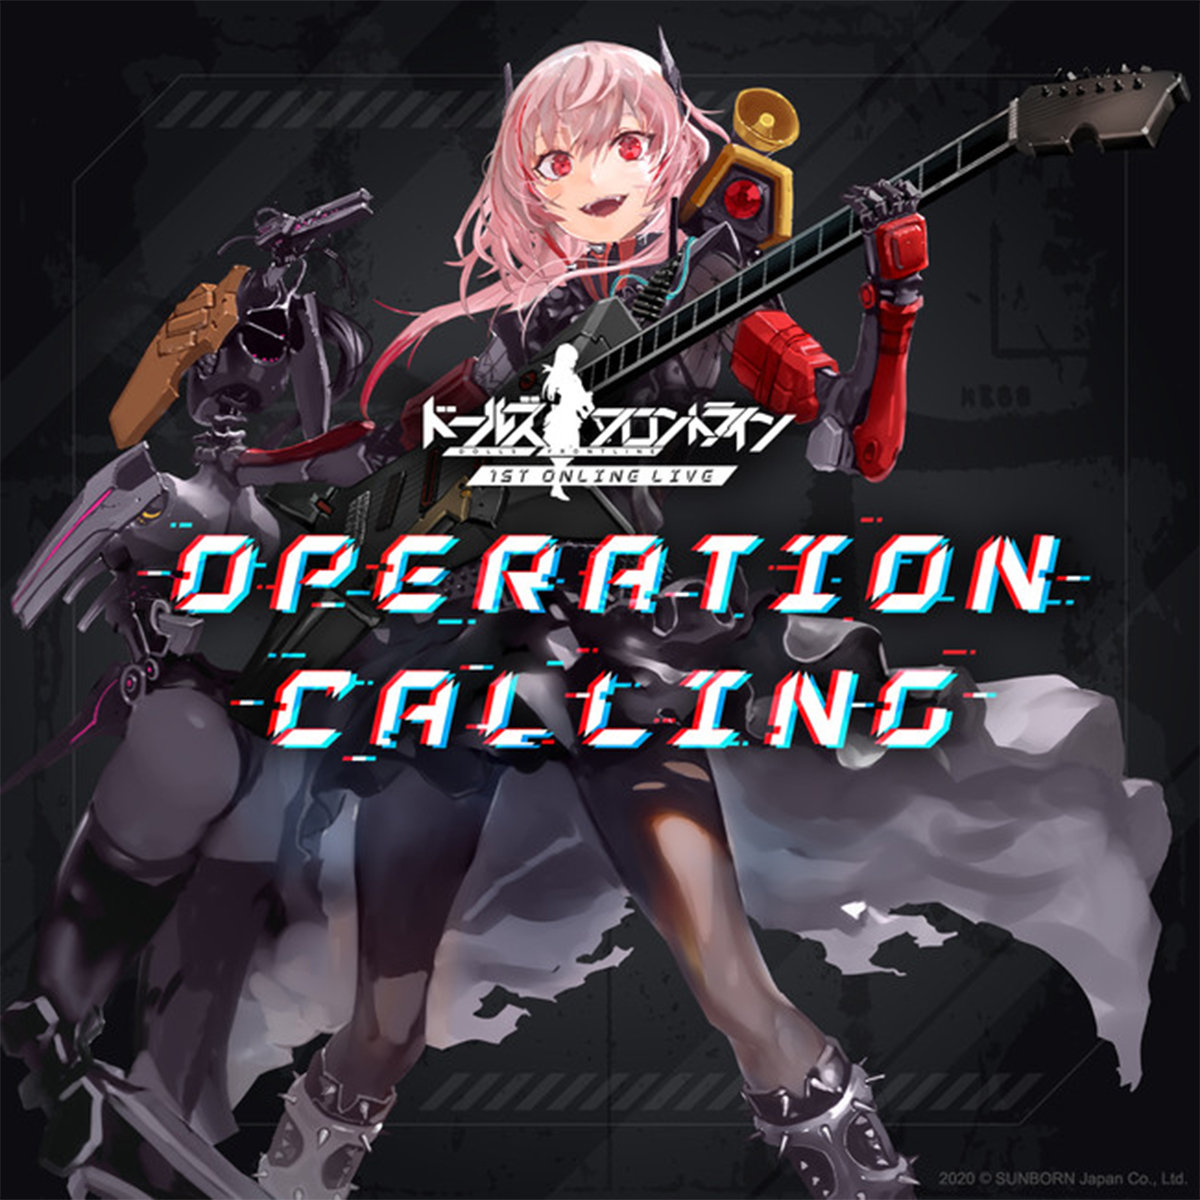 アプリゲーム ドールズフロントライン 1ST ONLINE LIVE「OPERATION CALLING」